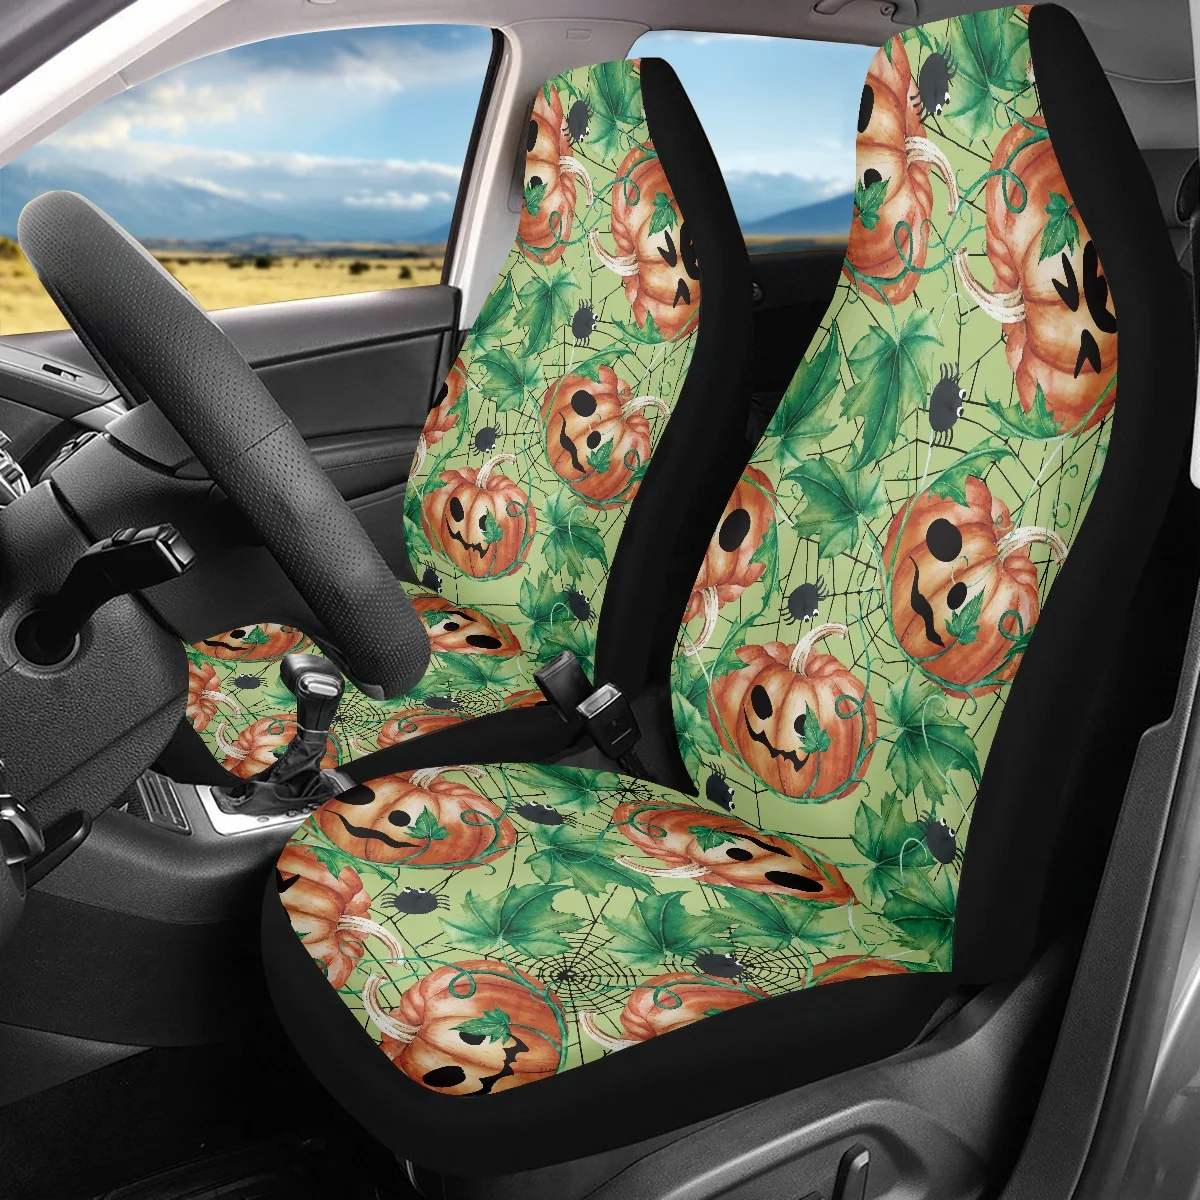 

Подушка на сиденье автомобиля INSTANTARTS, протектор для сиденья автомобиля, легко чистится, дизайн фокусов или подарков, 2 шт.